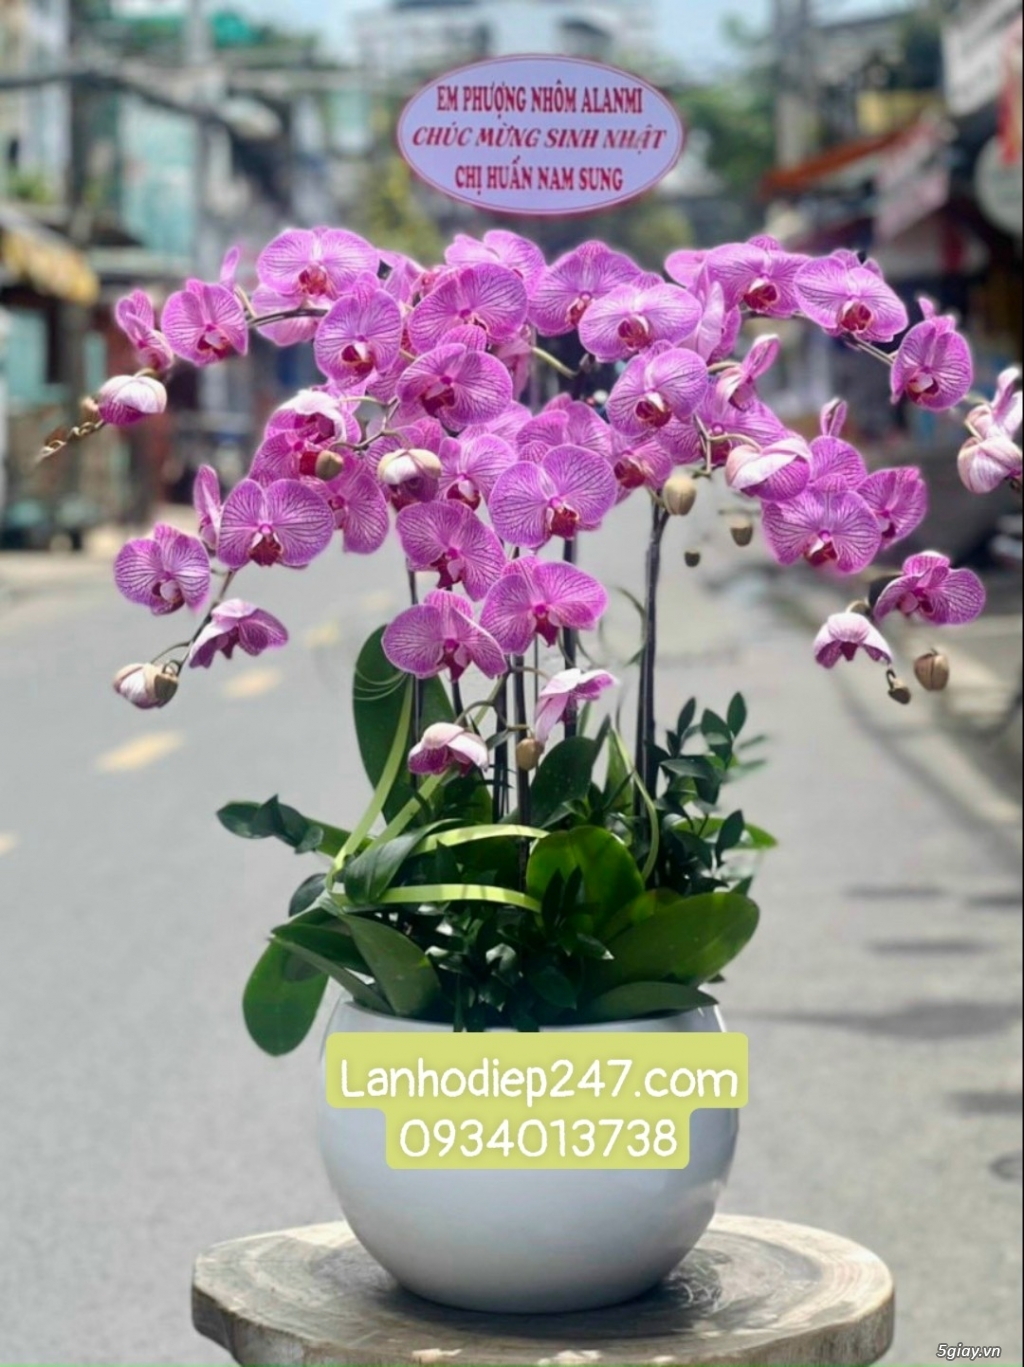 Mua Lan Hồ Điệp tại Sài Gòn, đặt hoa onine giao hàng miễn phí tại nơi - 13